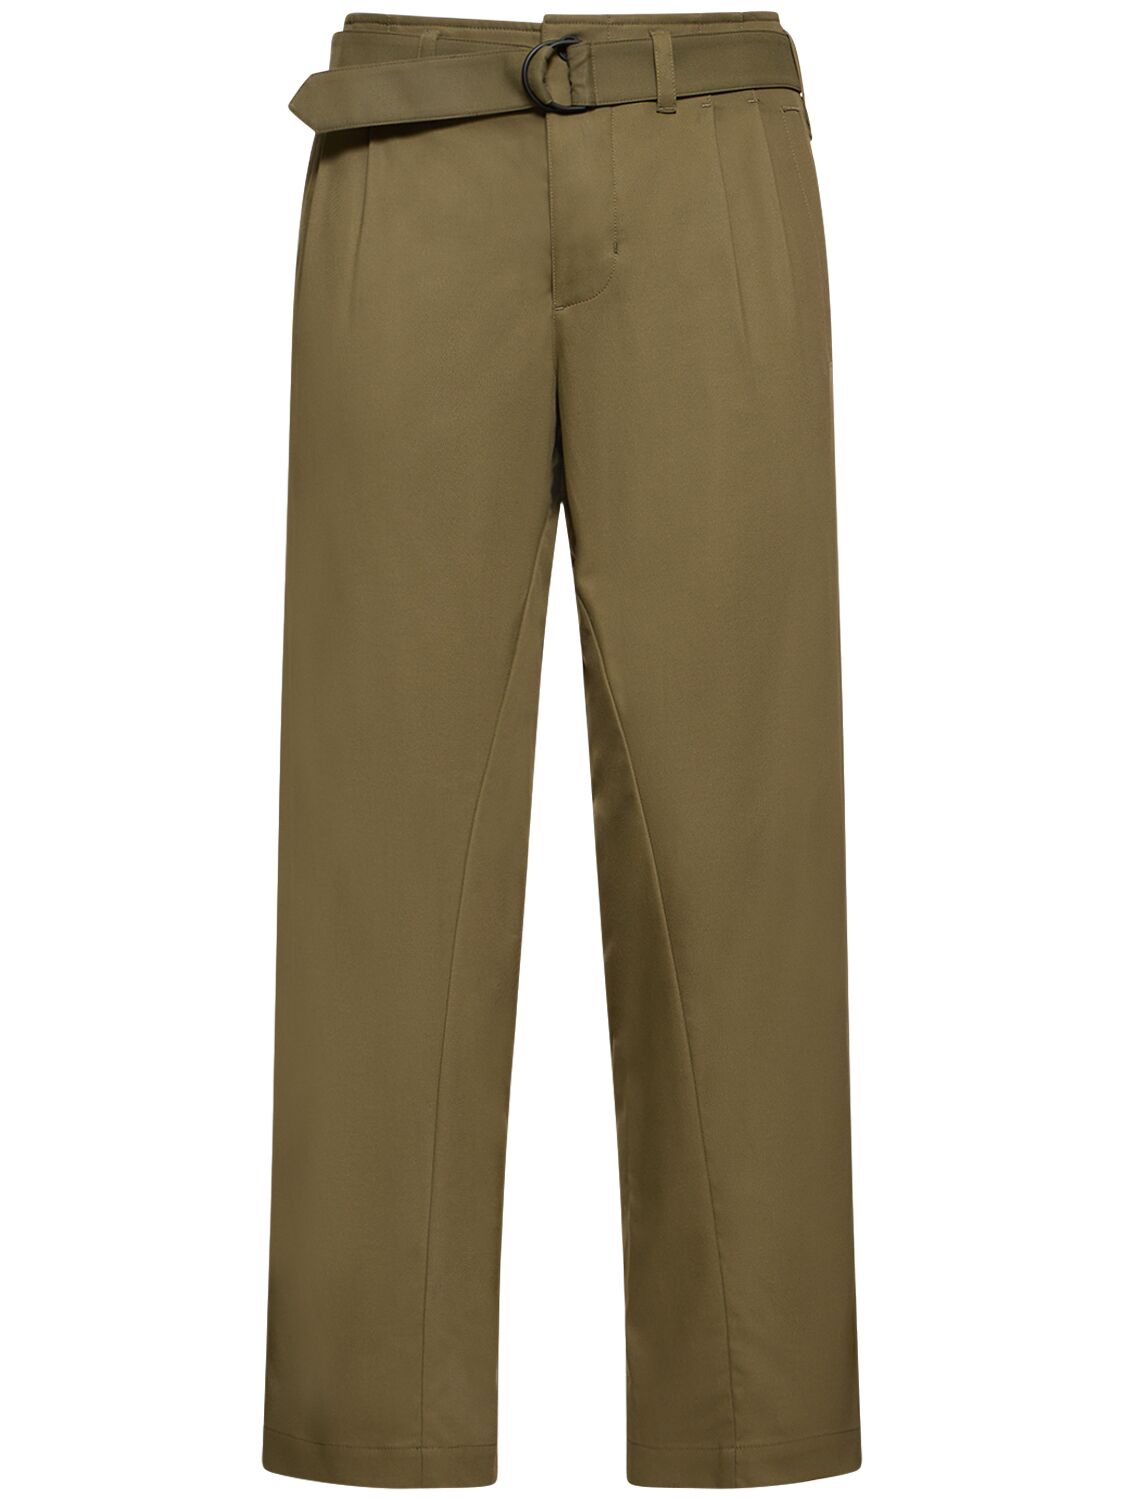 Esc Woven Cotton Blend Worker Pants – MEN > CLOTHING > PANTS